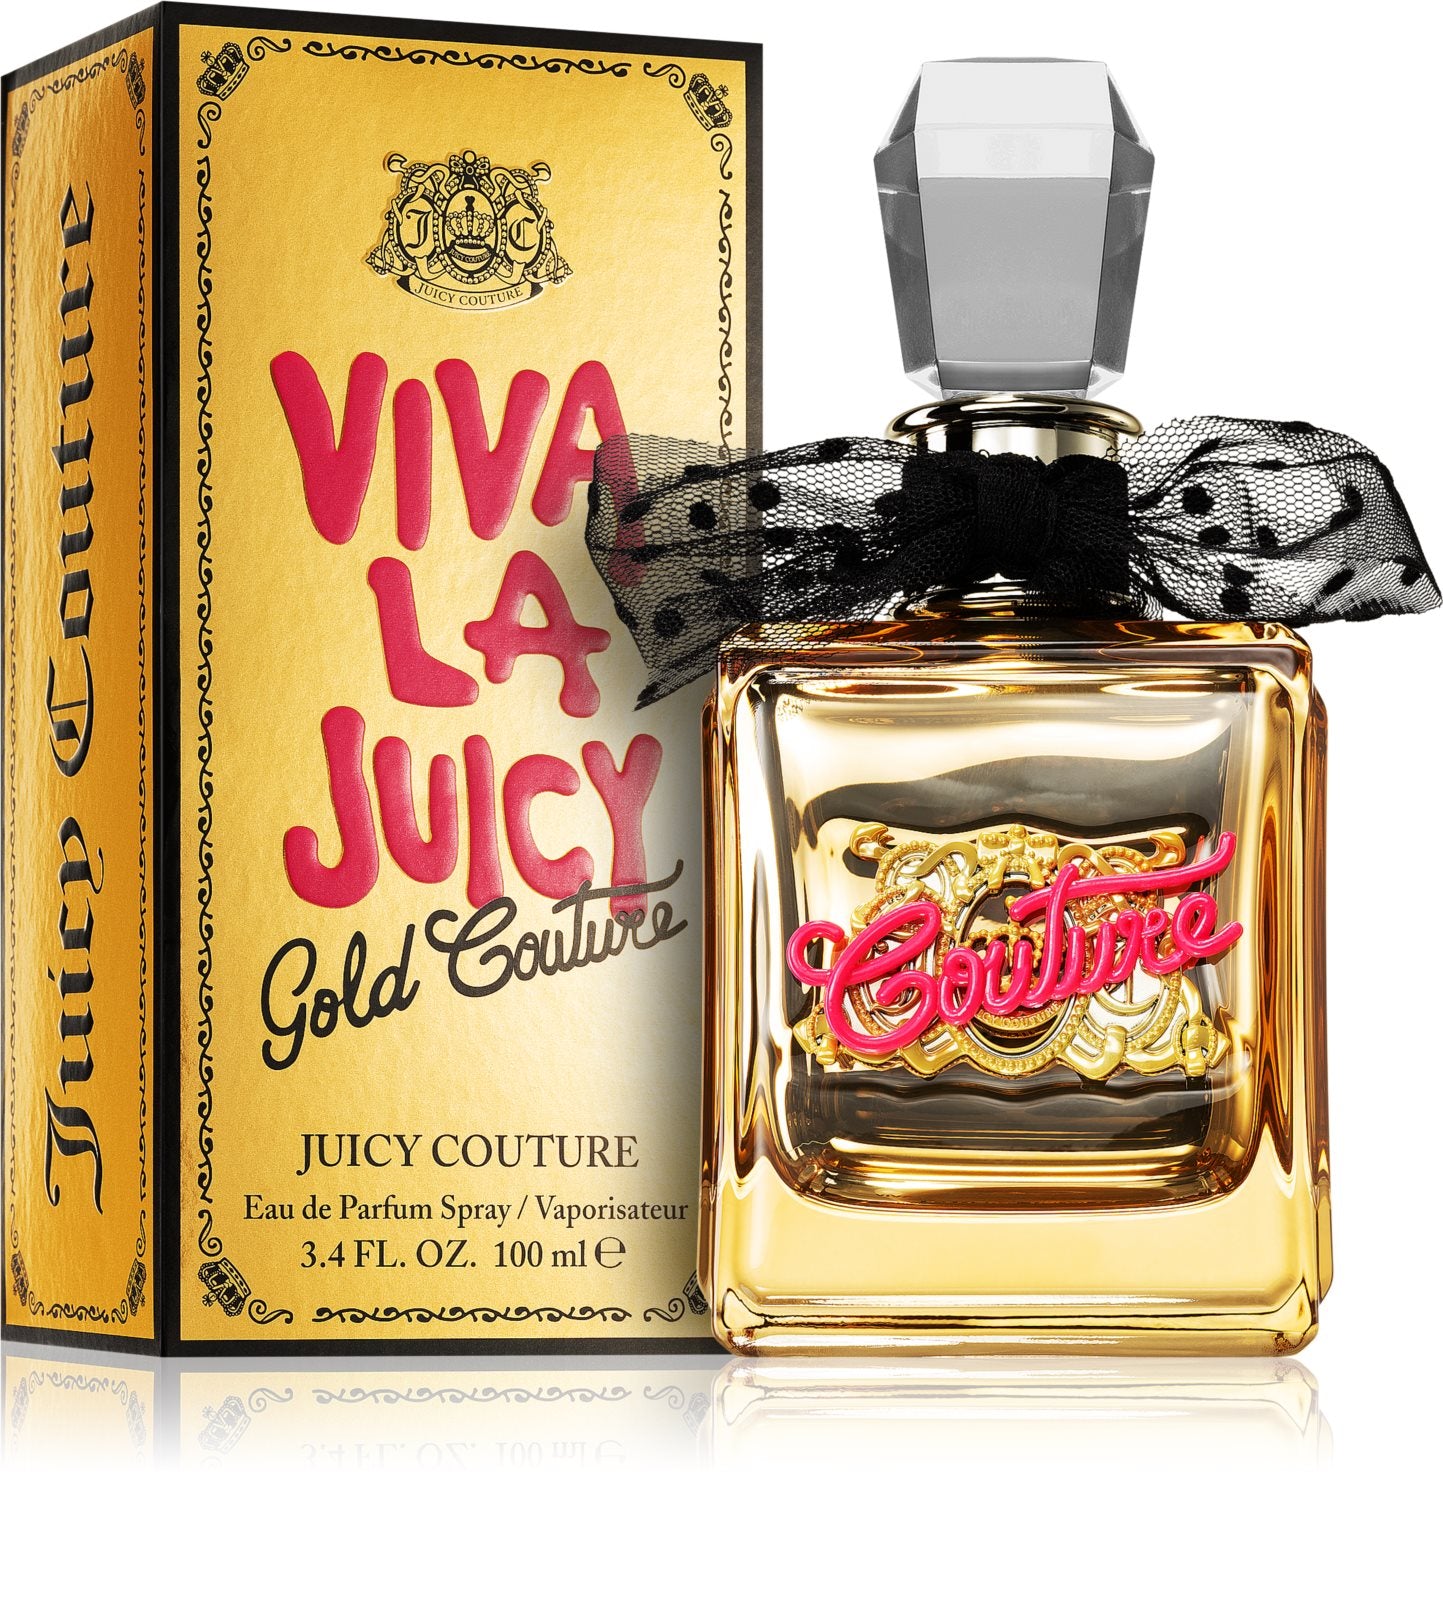 Juicy Couture viva la juicy gold couture eau de parfum 50ml